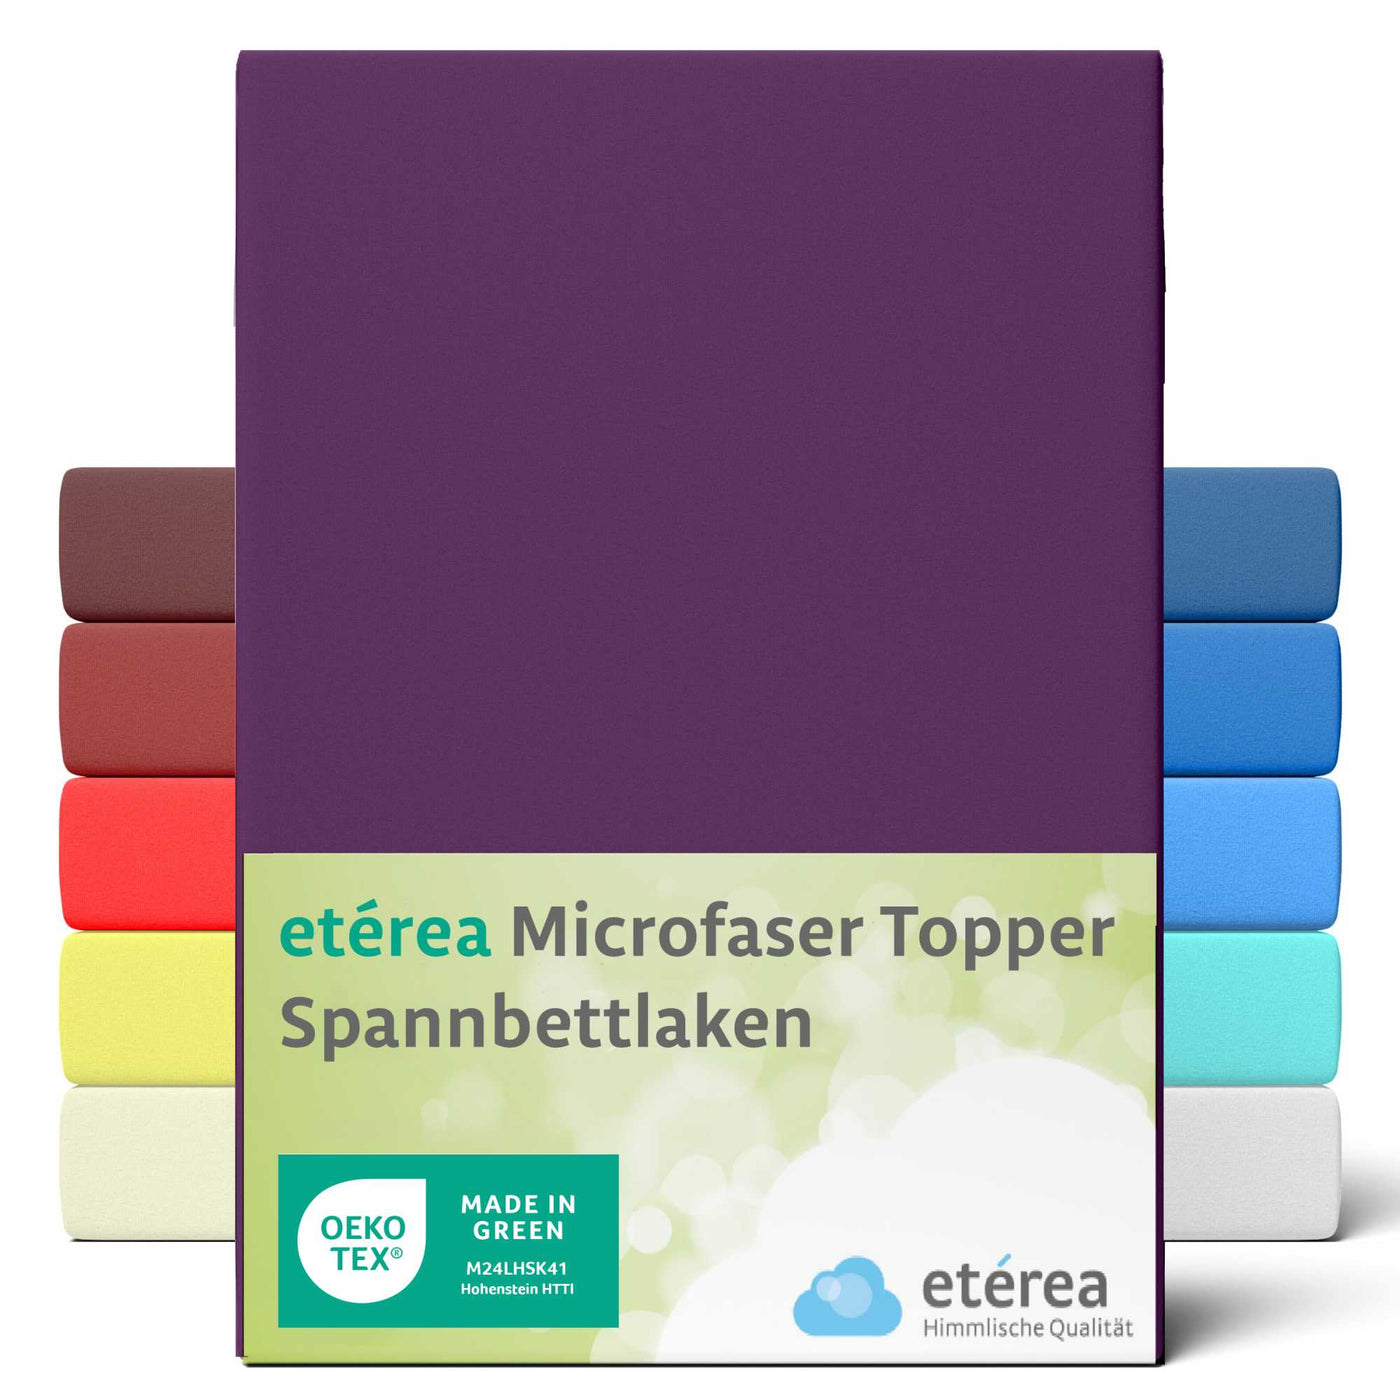 etérea Microfaser Topper Spannbettlaken #farbe_pflaume